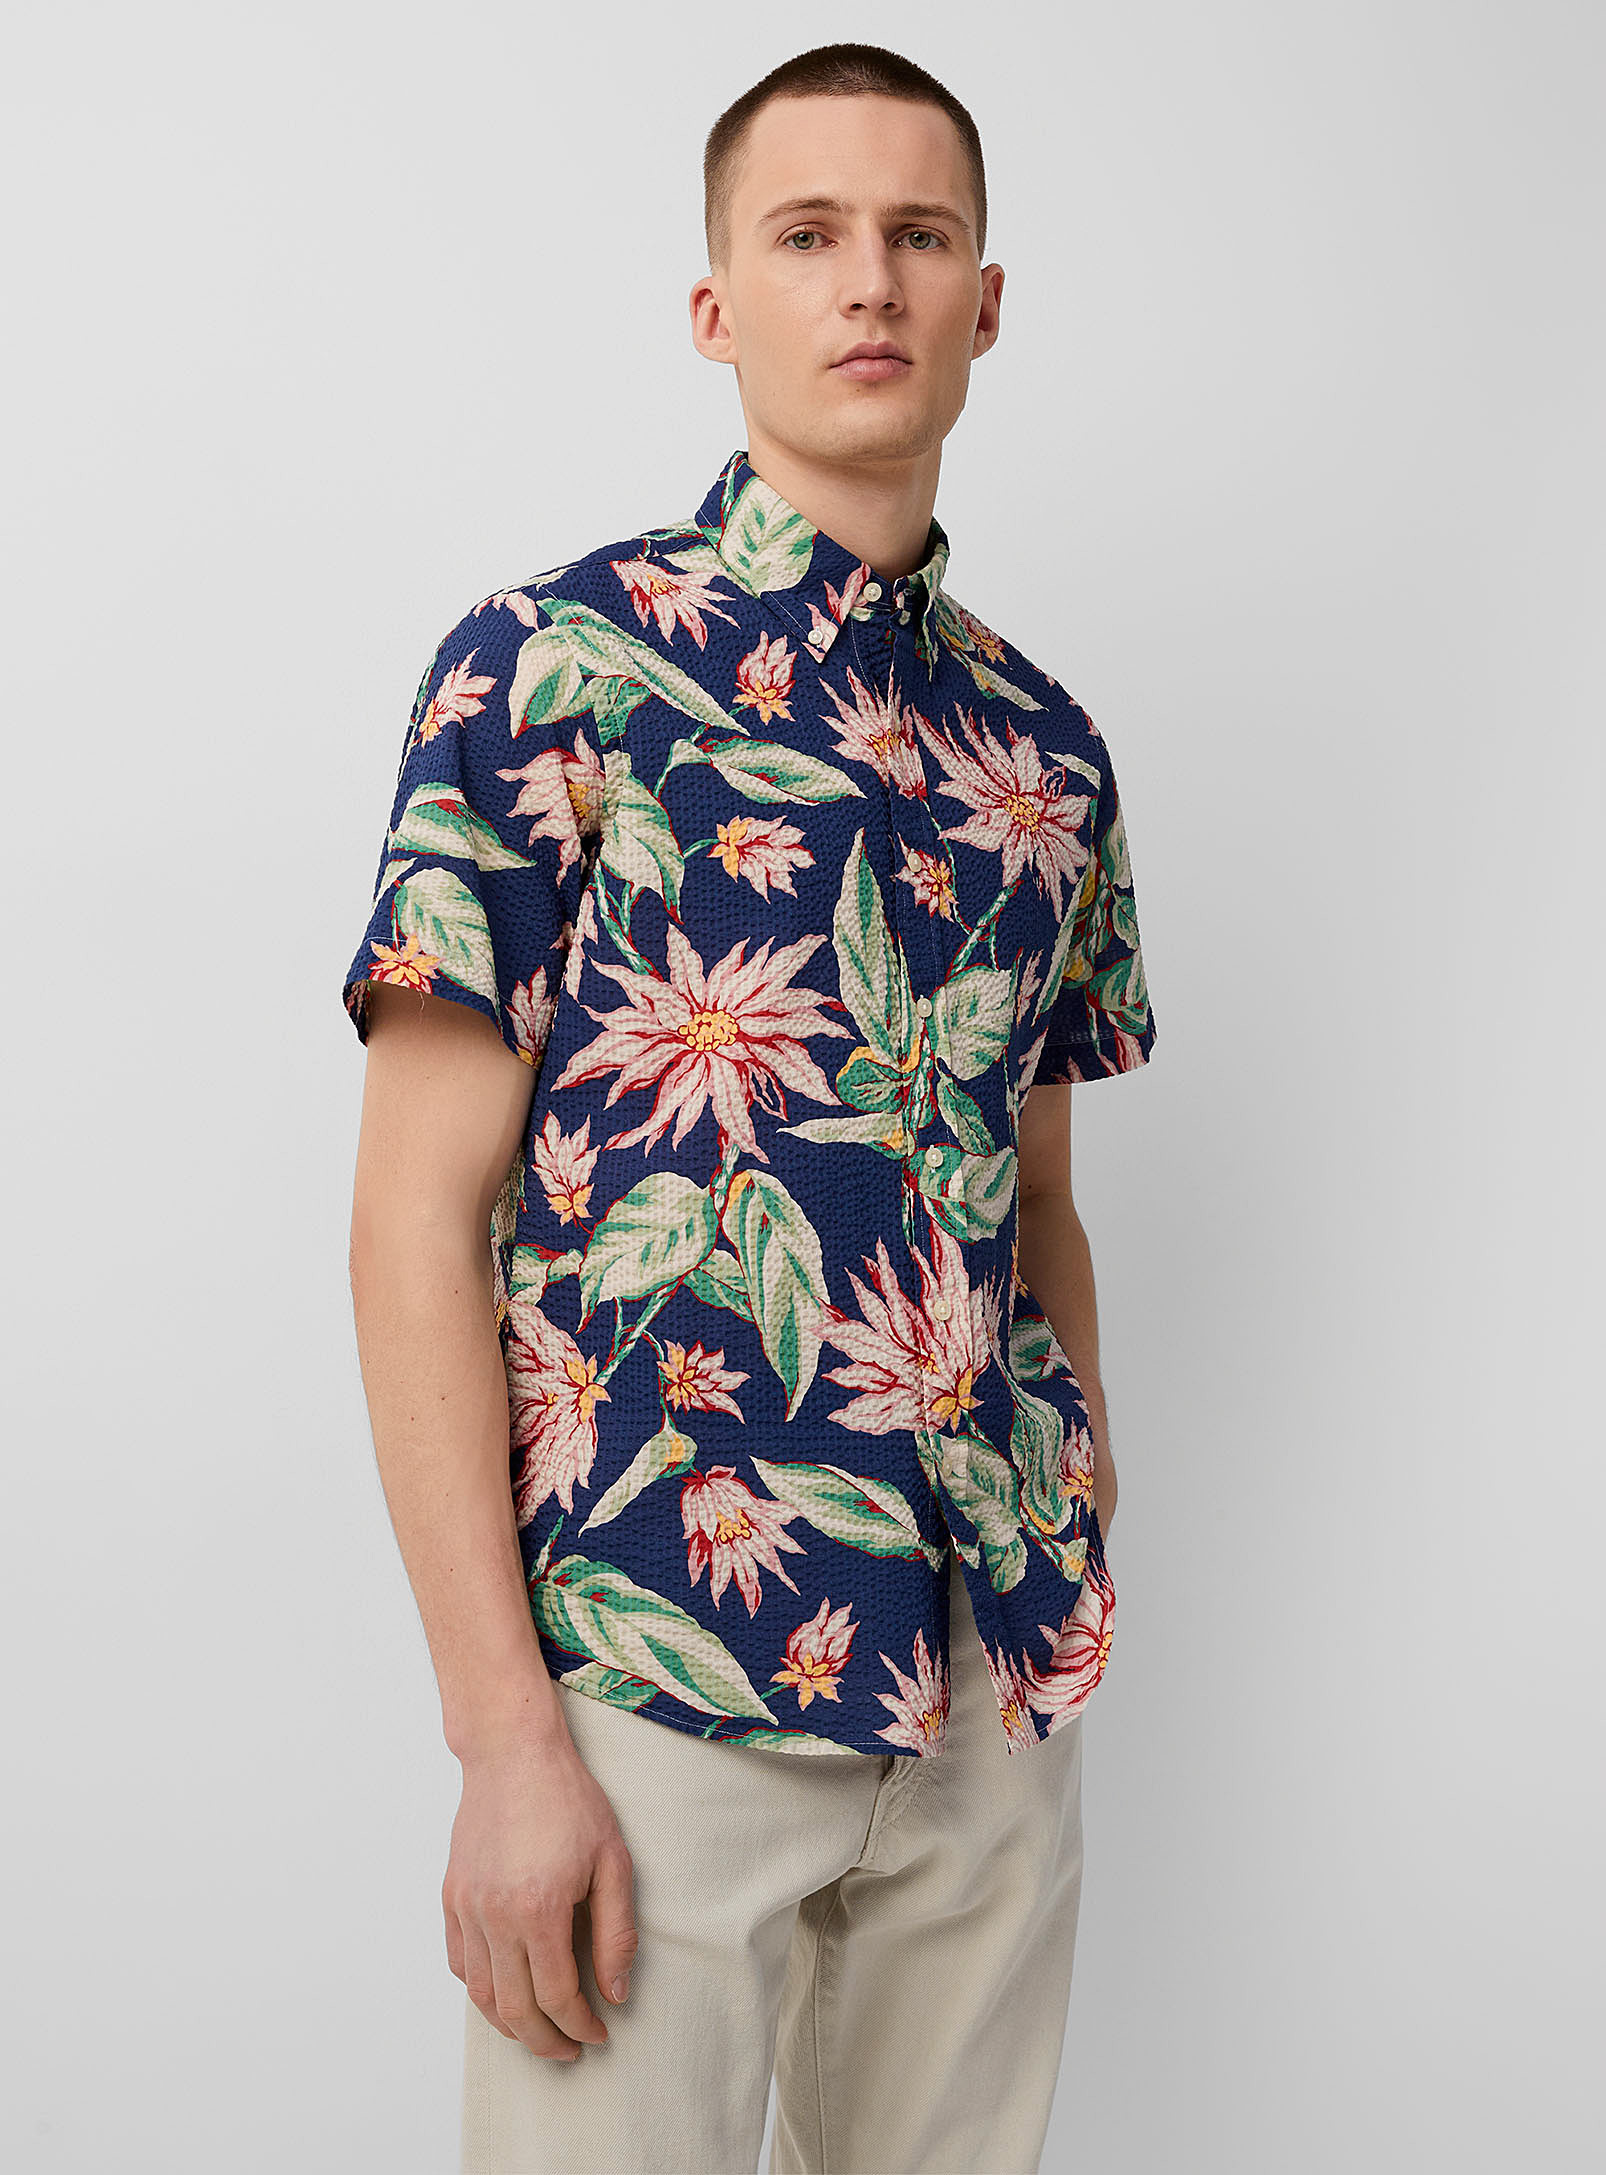 Polo Ralph Lauren - La chemise gaufrée fleurs exotiques